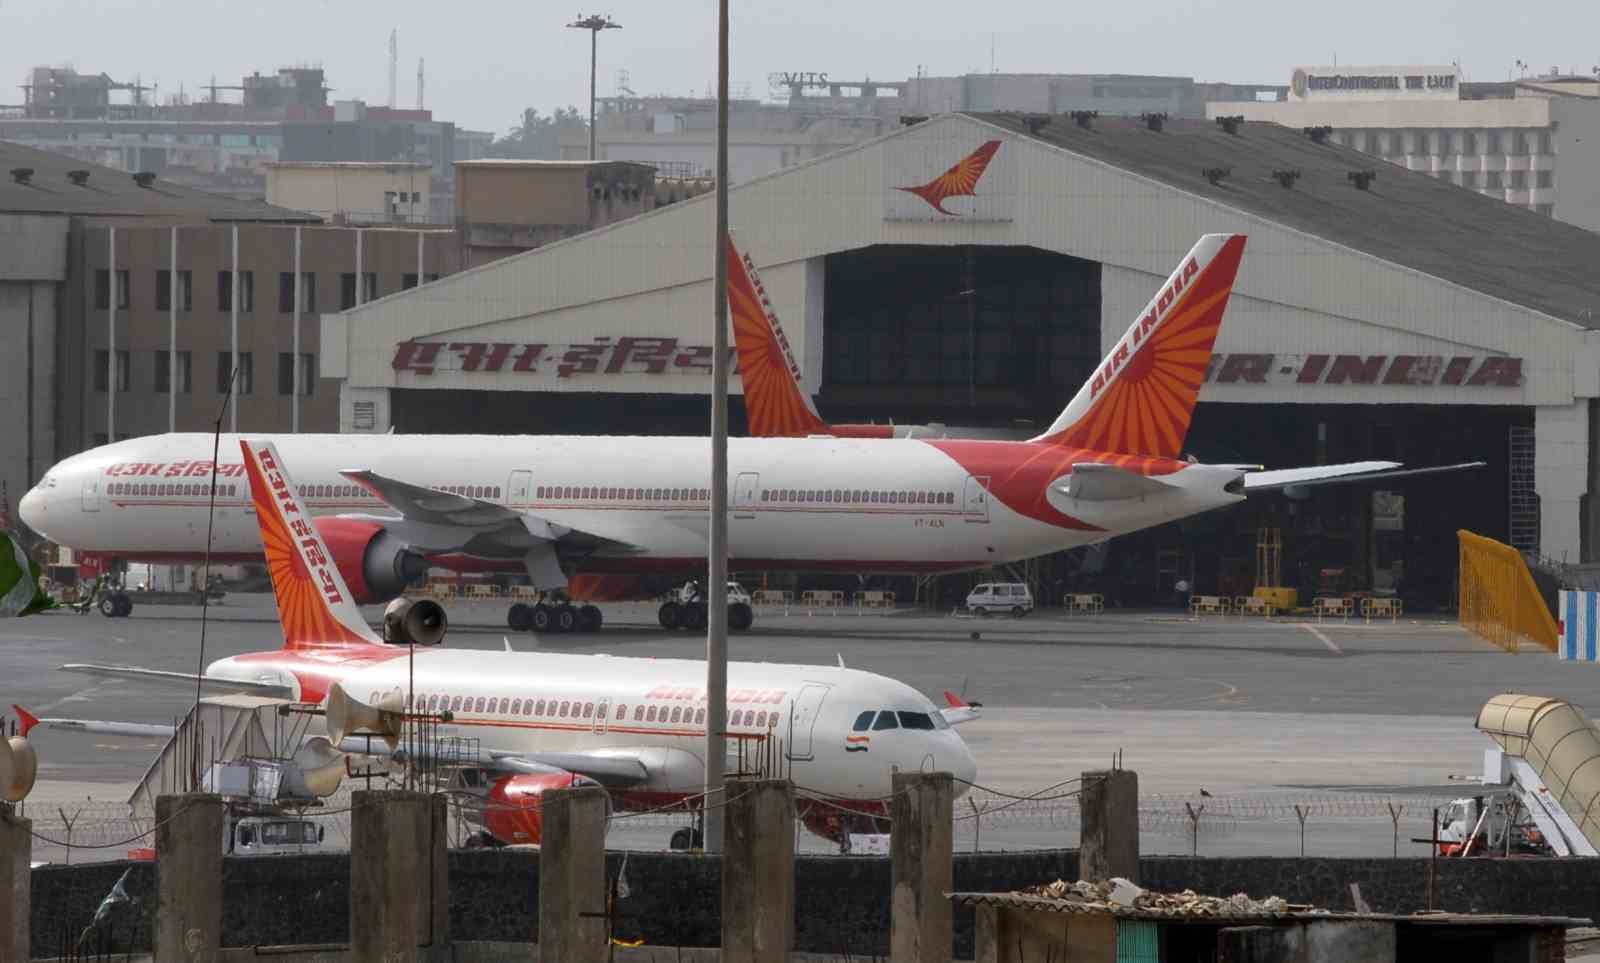 Air India Express, 100’den fazla kabin memurunun hastalık izni alması nedeniyle 90’dan fazla uçuşu iptal etti